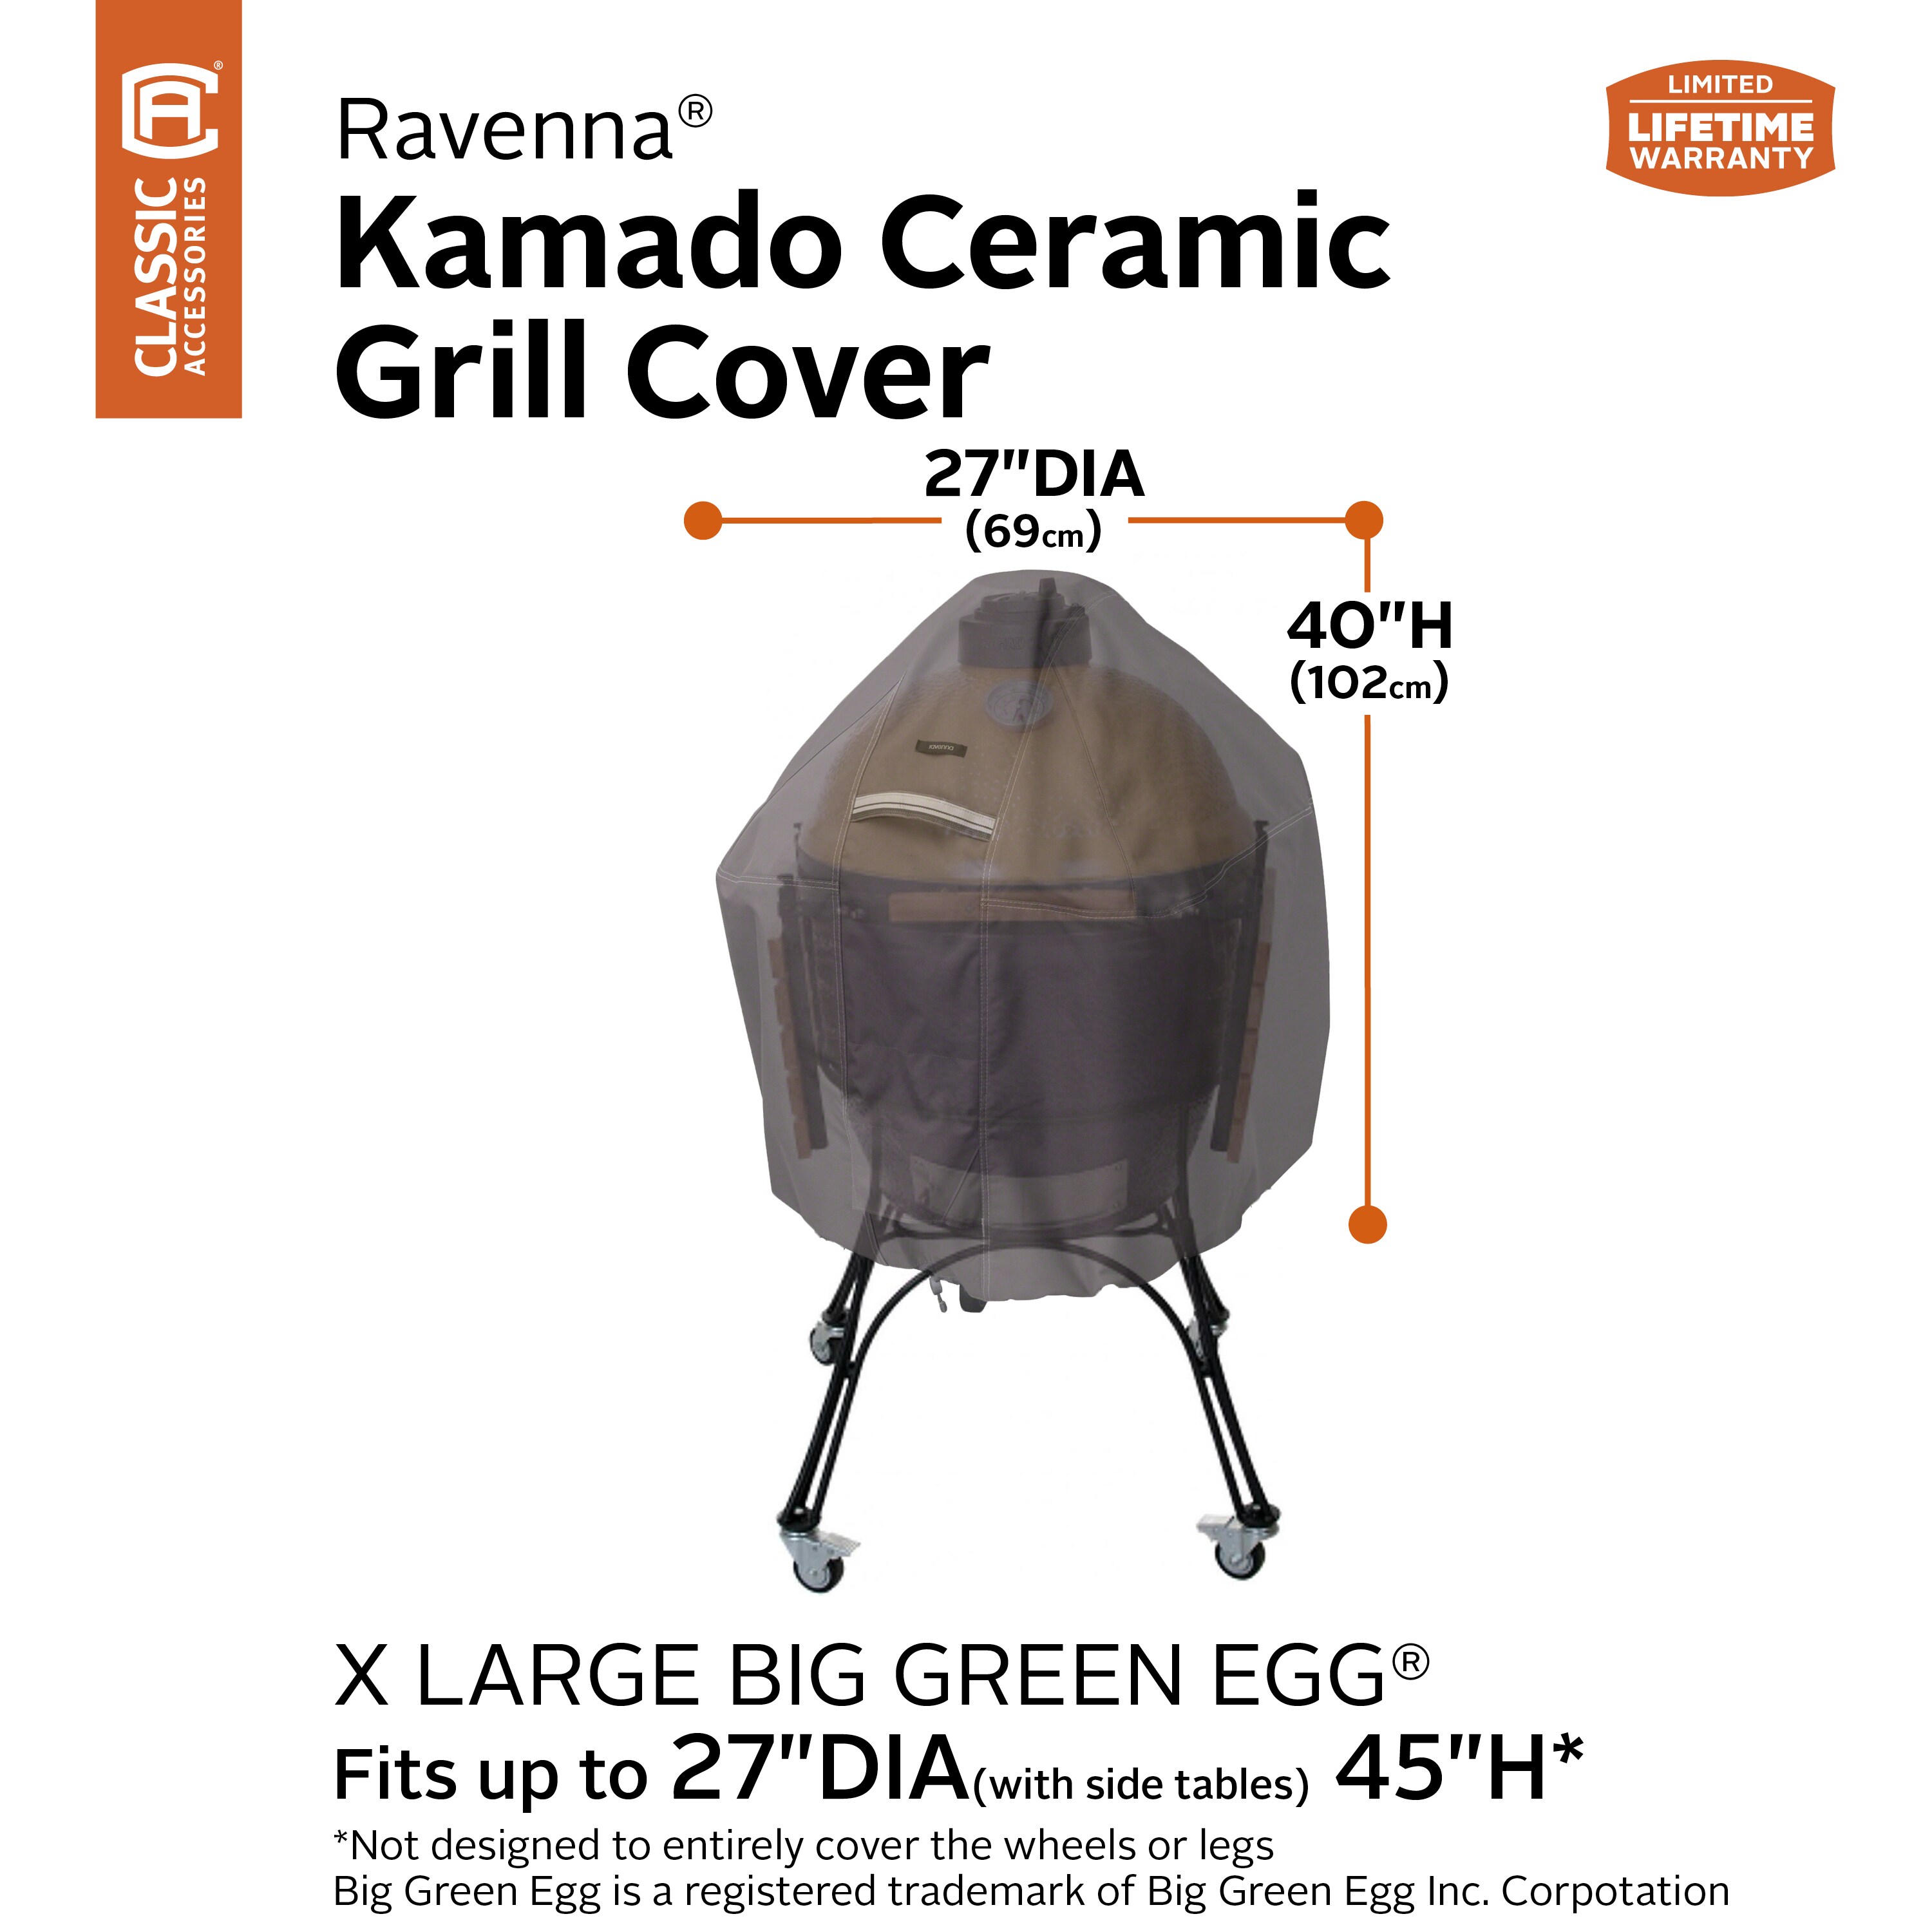 Veranda Big Green Egg Grill Cover Classic Accessories Outdoor Grill Accessories 